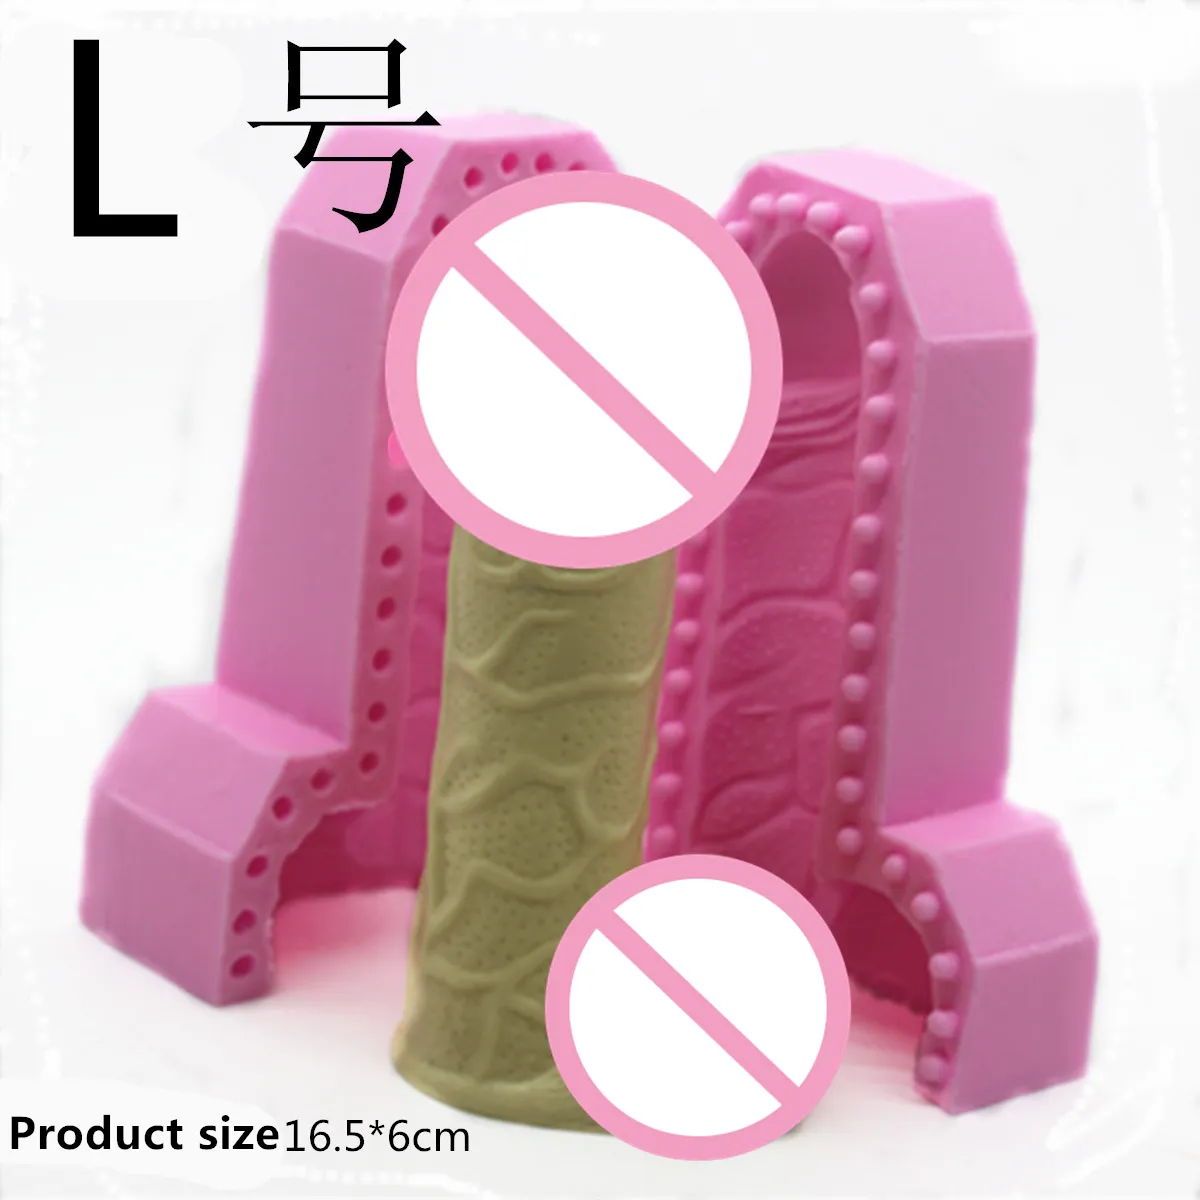 3D Güzellik Penis Silikon Fondan Kek Dekorasyon Araçları Çikolata Kalıp Sabun Mum Kalıpları E868 2010235039728